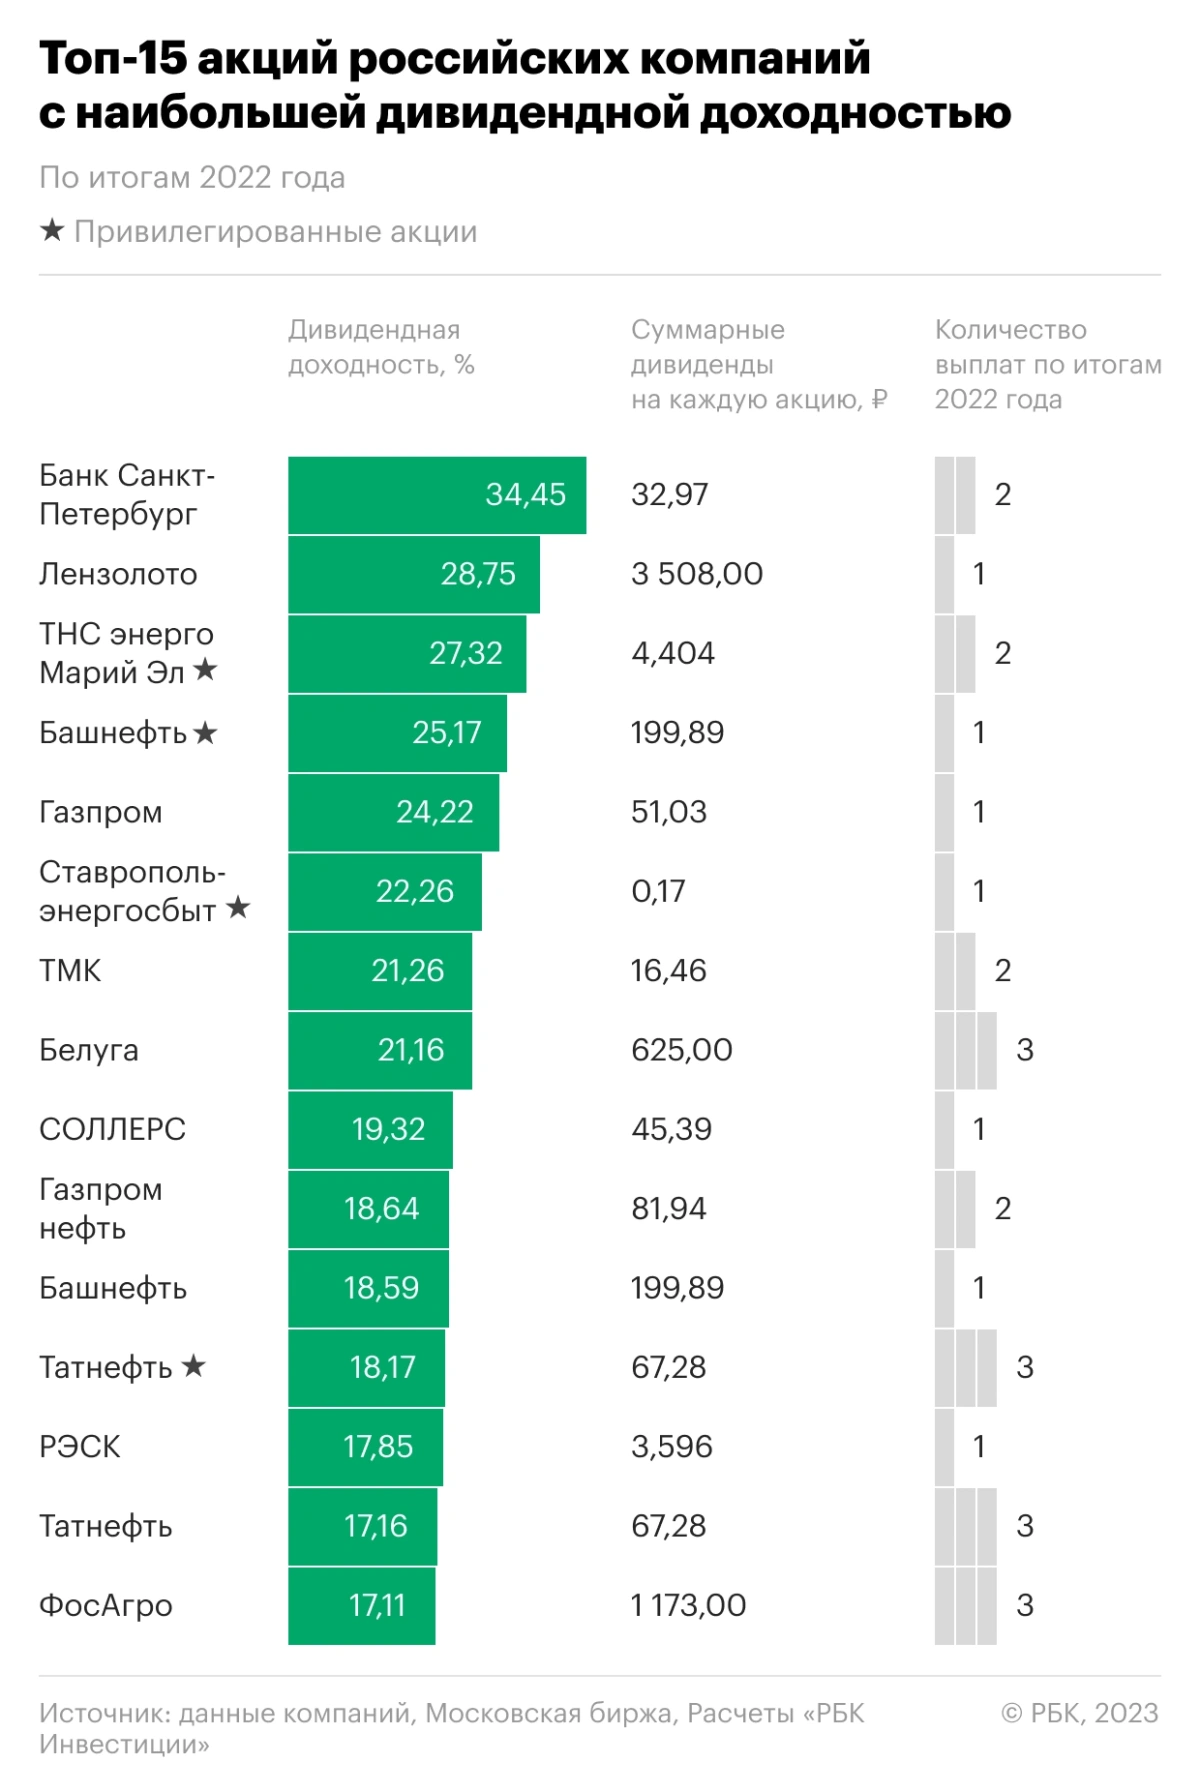 <p>Топ-15 акций российских компаний с наибольшей дивидендной доходностью выплат по результатам 2022 года</p>